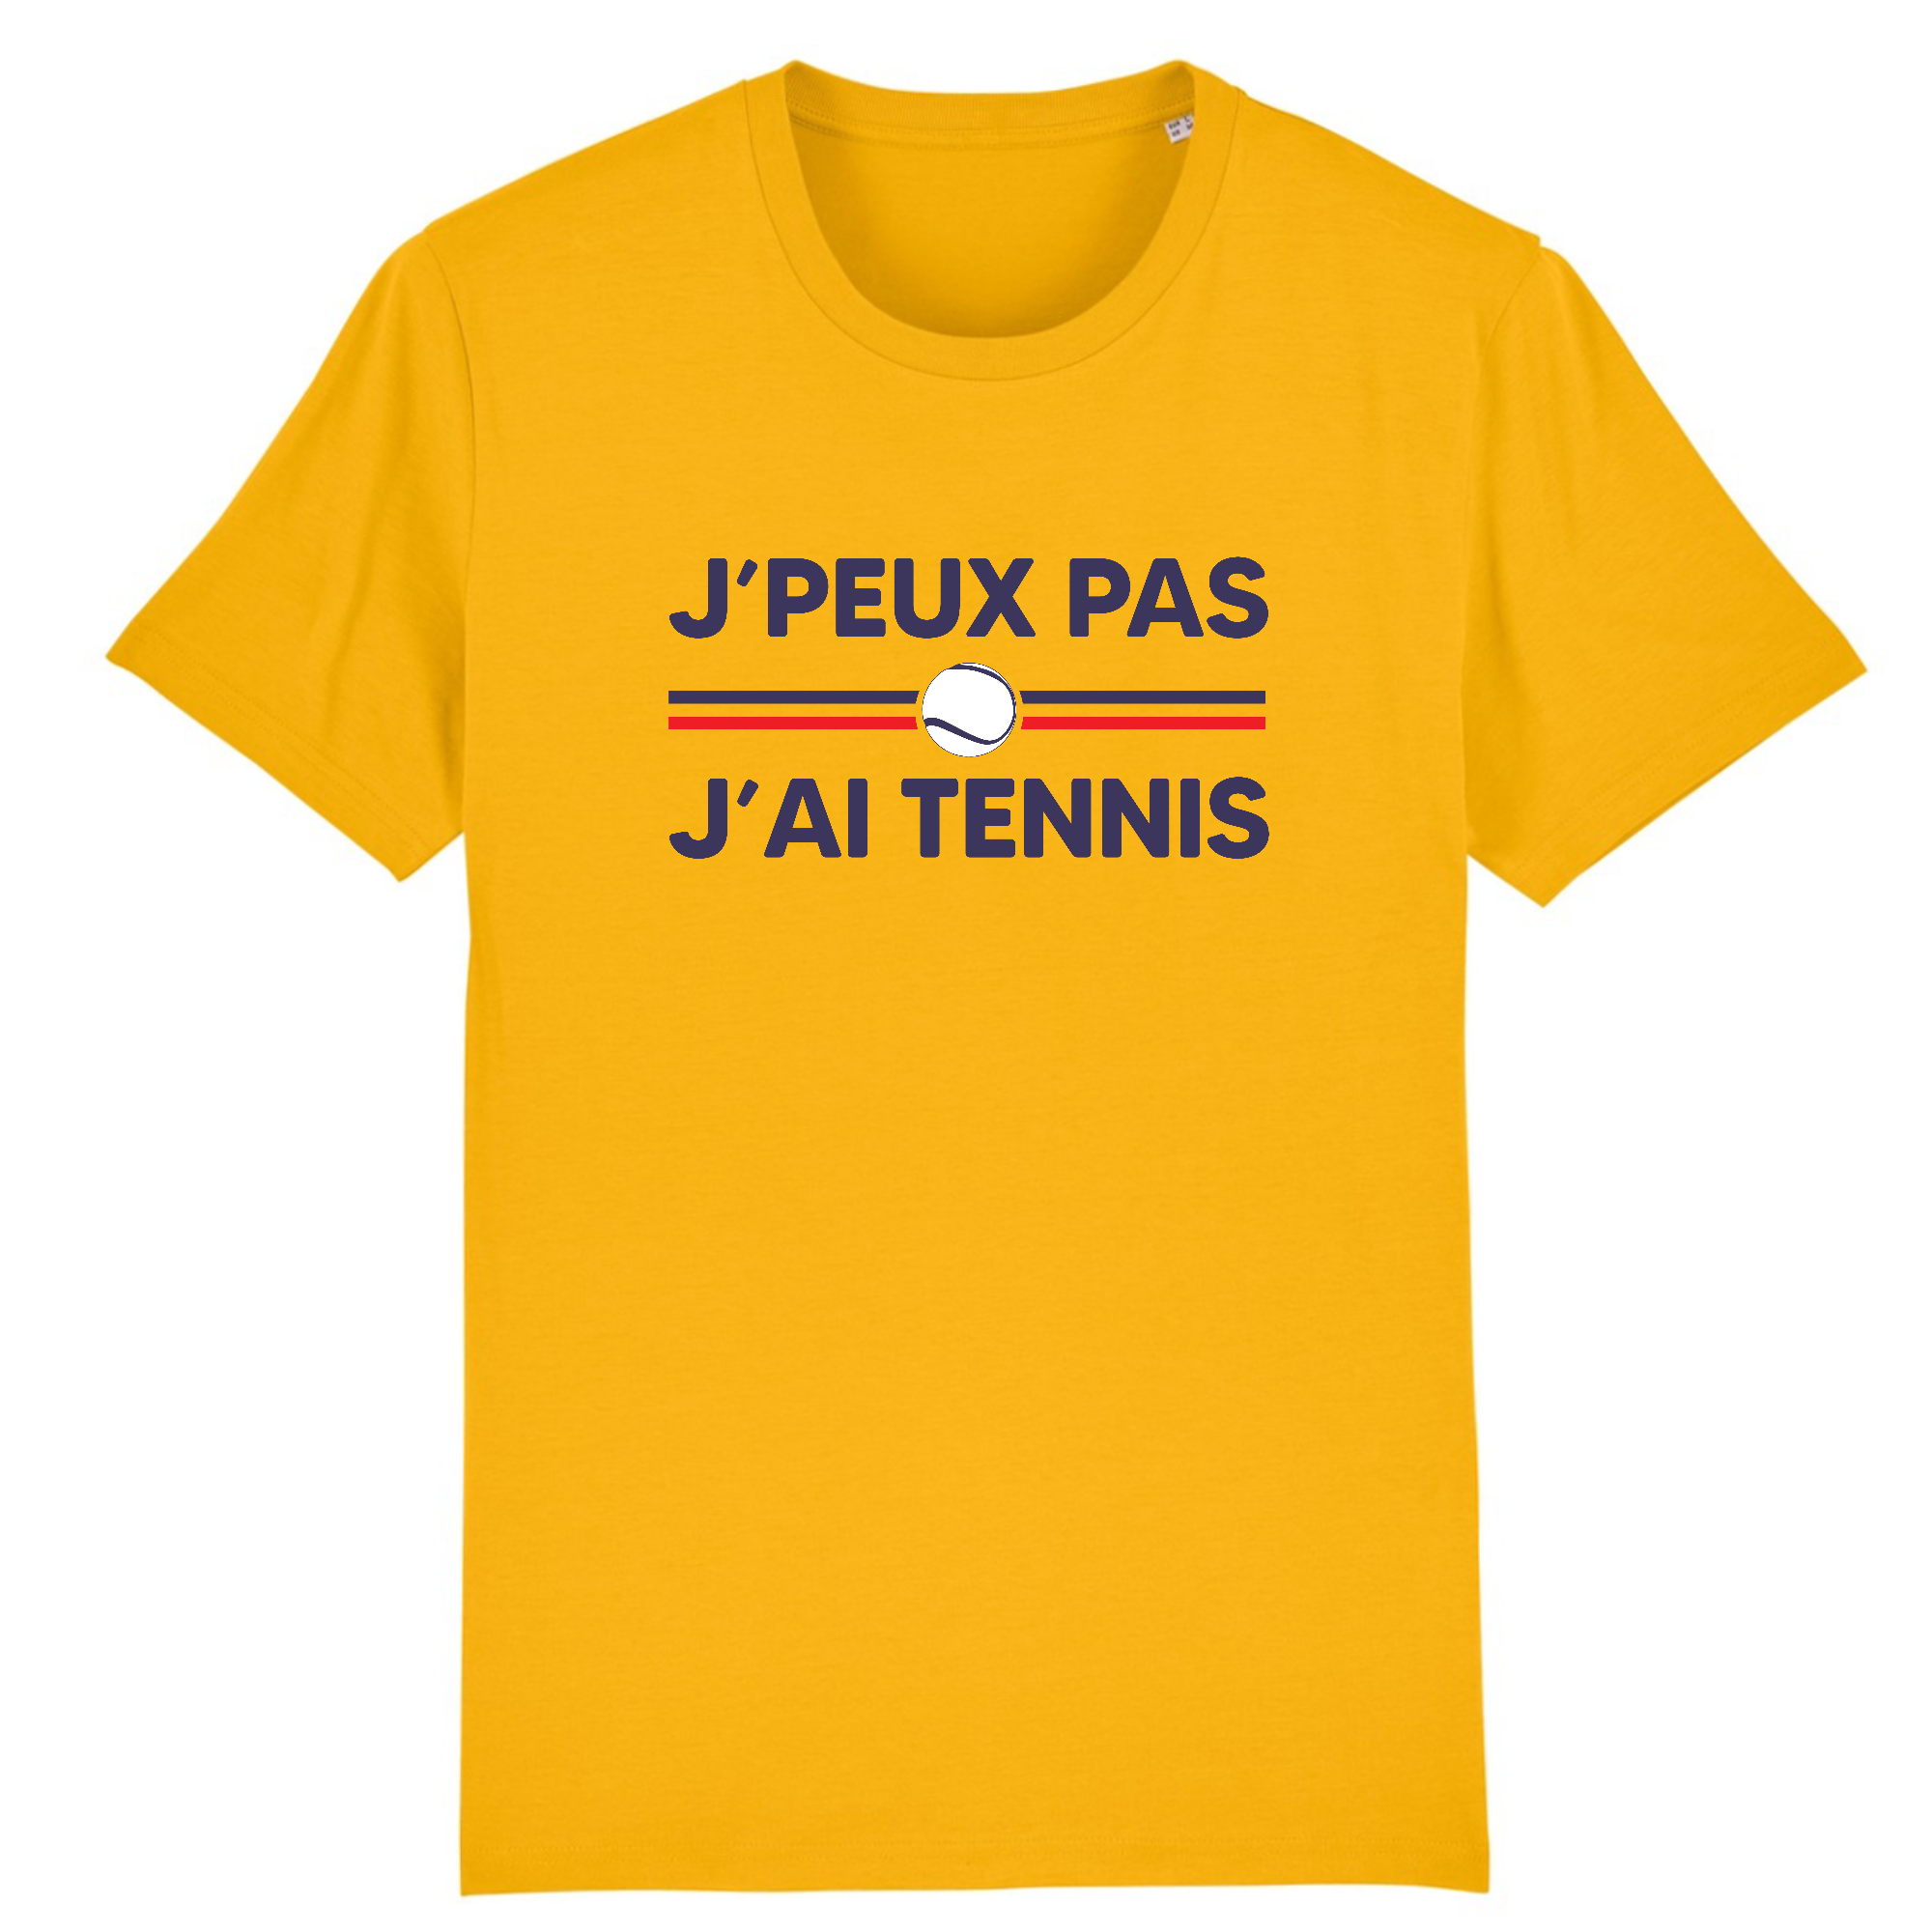 T-shirt j'peux pas J'ai tennis - Balle jaune - cadeau homme Taille S